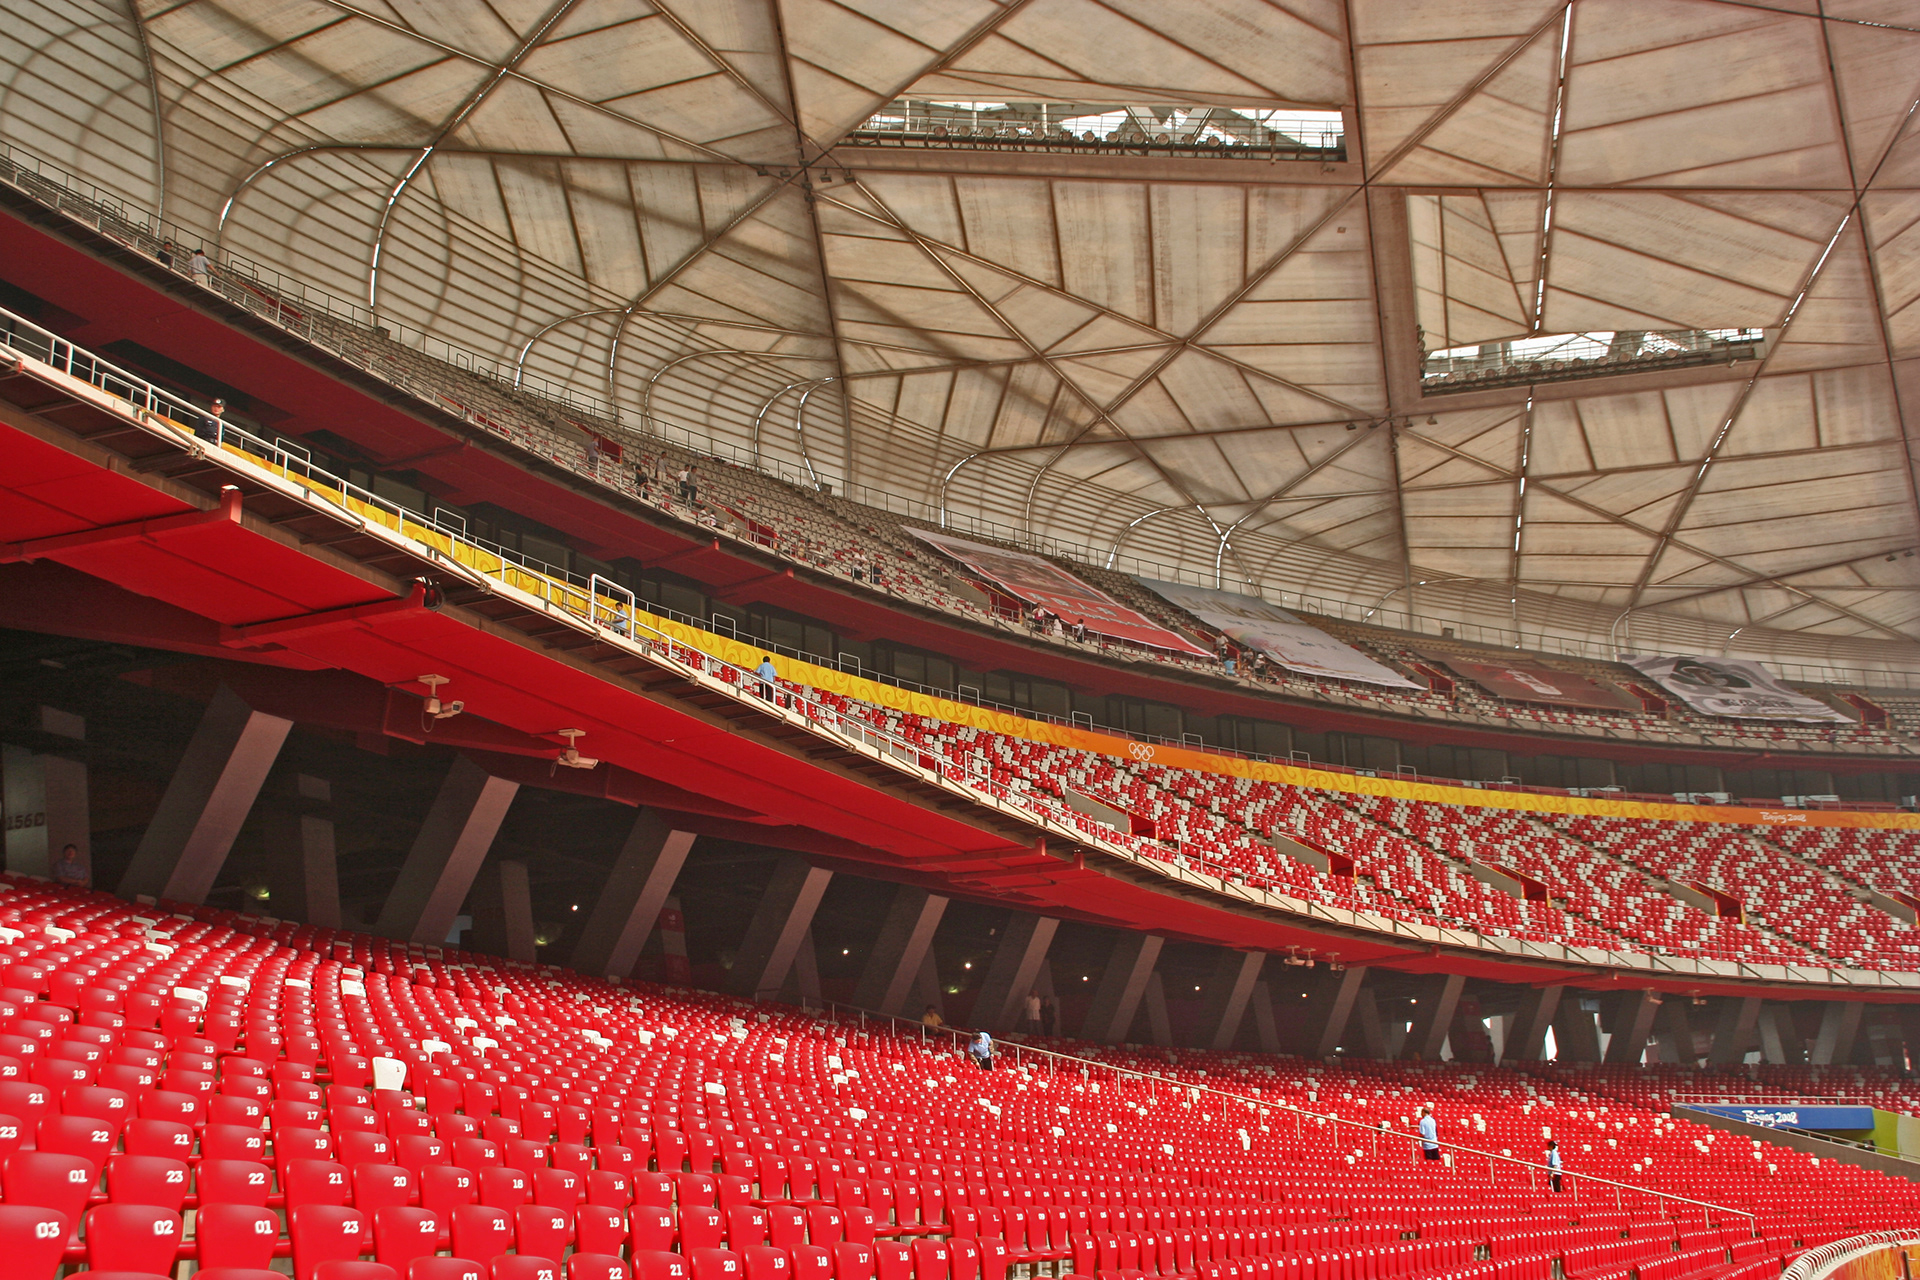 Пекин стадион. Beijing National Stadium (Пекин, Китай, 2008). Пекинский национальный стадион Птичье гнездо. Национальный стадион Пекин внутри. Национальный стадион Птичье гнездо в Пекине Китай.